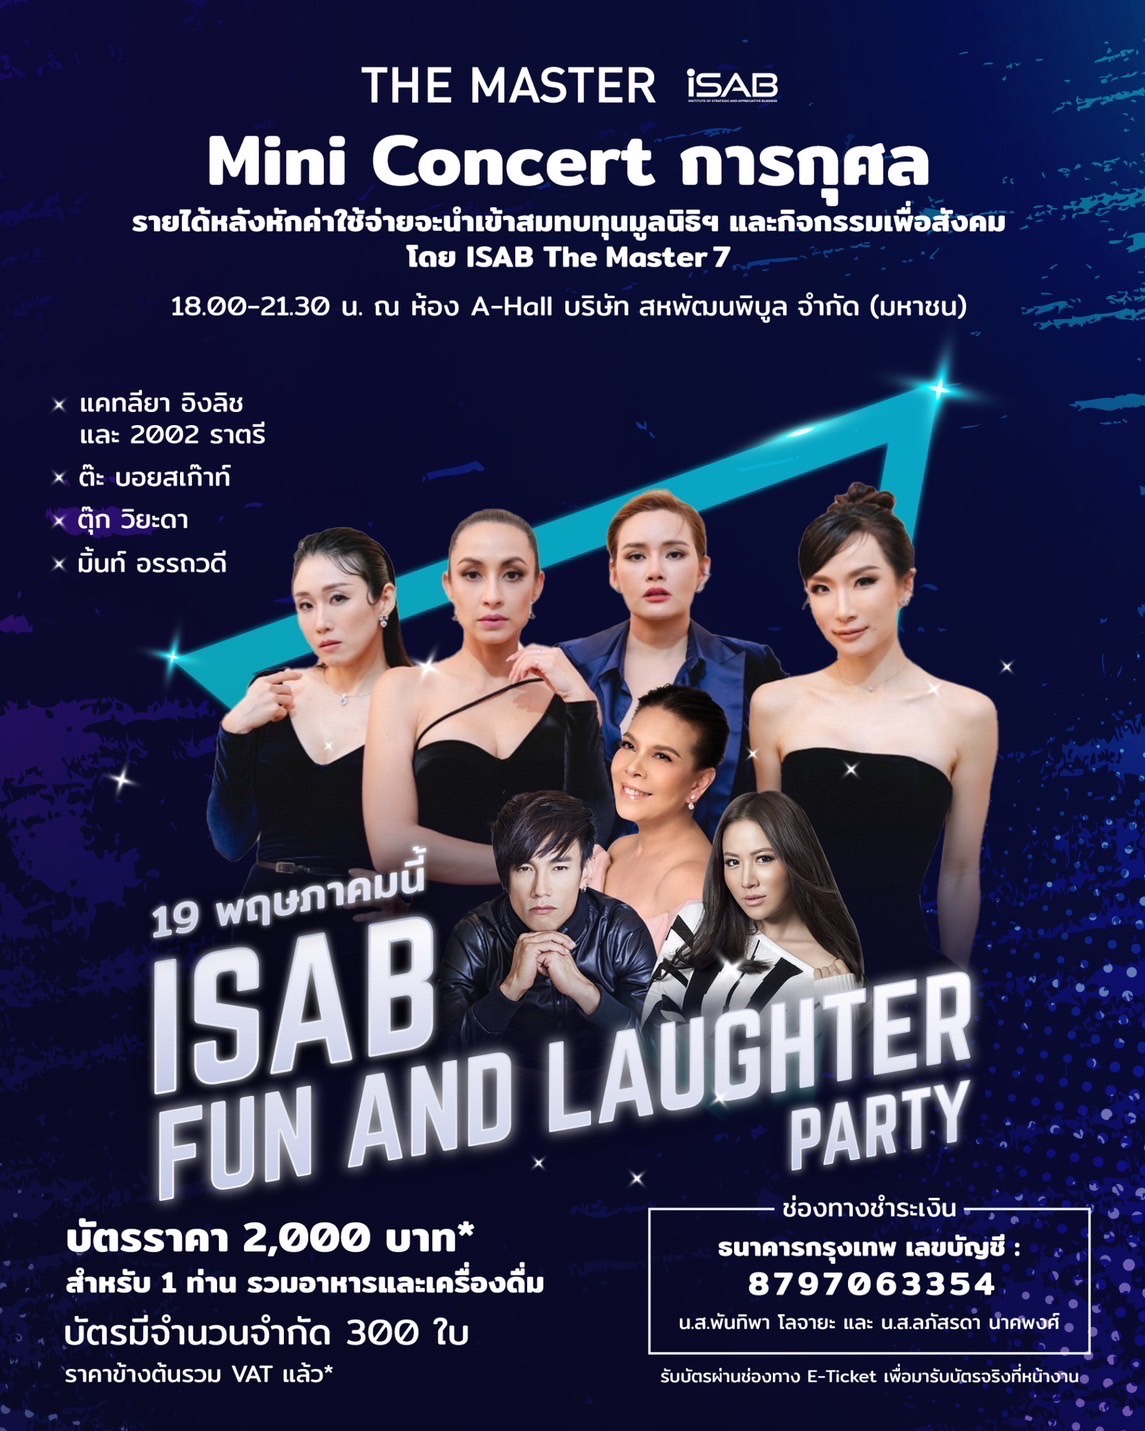 สถาบัน i-SAB โดย The Master 7 สหพัฒนพิบูล จัดมินิคอนเสิร์ตการกุศล ครั้งแรก 1st Concert i-SAB Fun and laughter Party ศุกร์ที่19 พฤษภาคมนี้